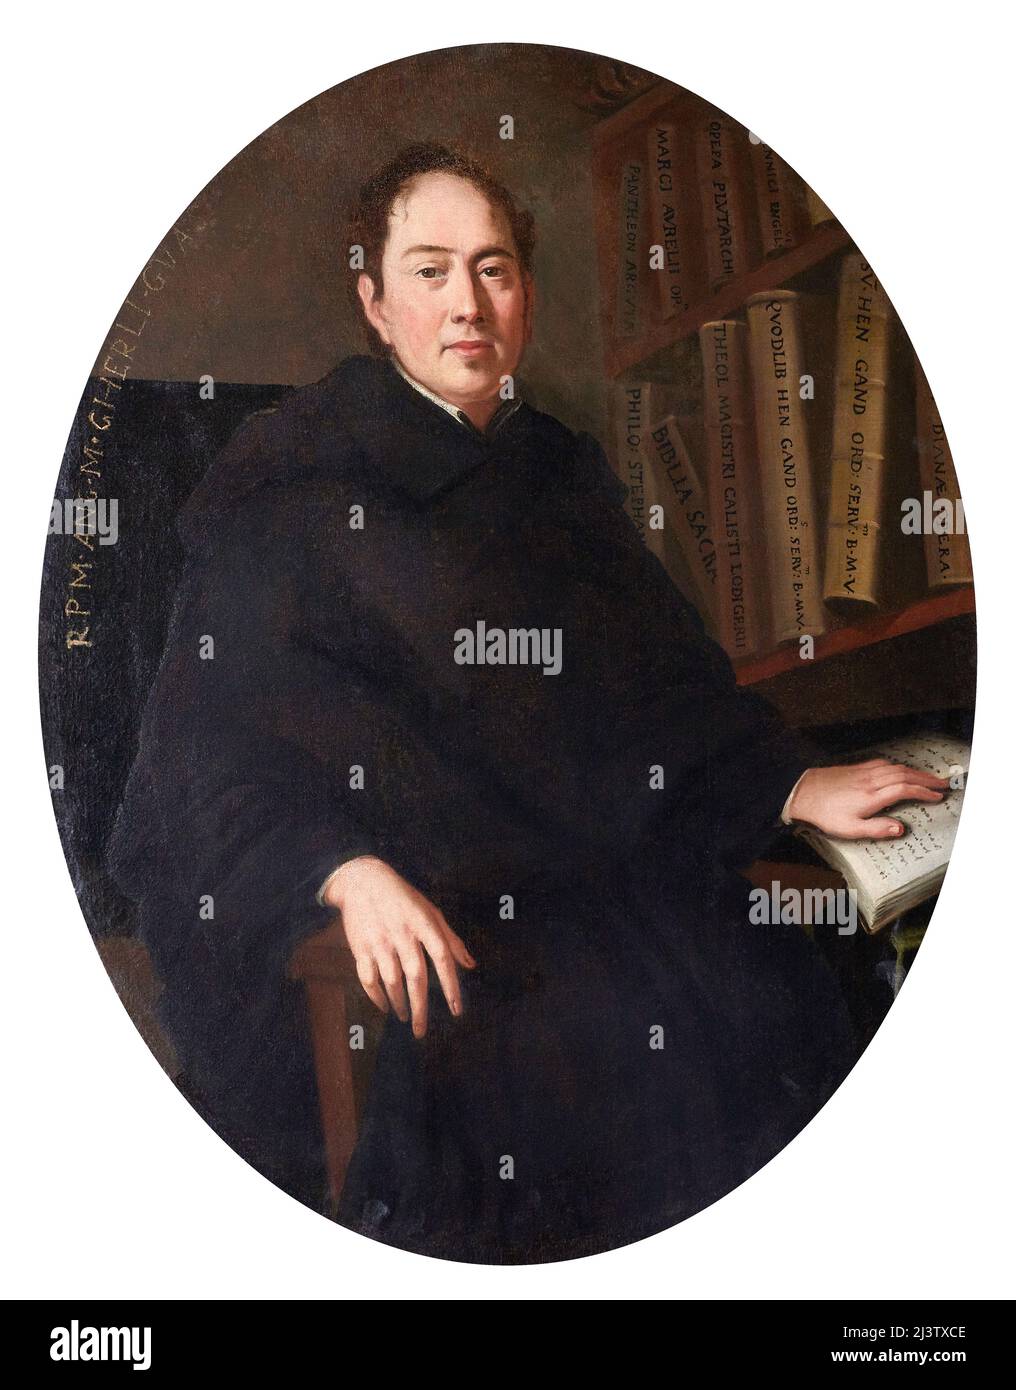 Porträt des gedienten Vaters Angelo Maria Gherli - Öl auf Leinwand - emilianischer Maler des ersten Viertels des 18.. Jahrhunderts - Guastalla (Re), Italien, Stockfoto